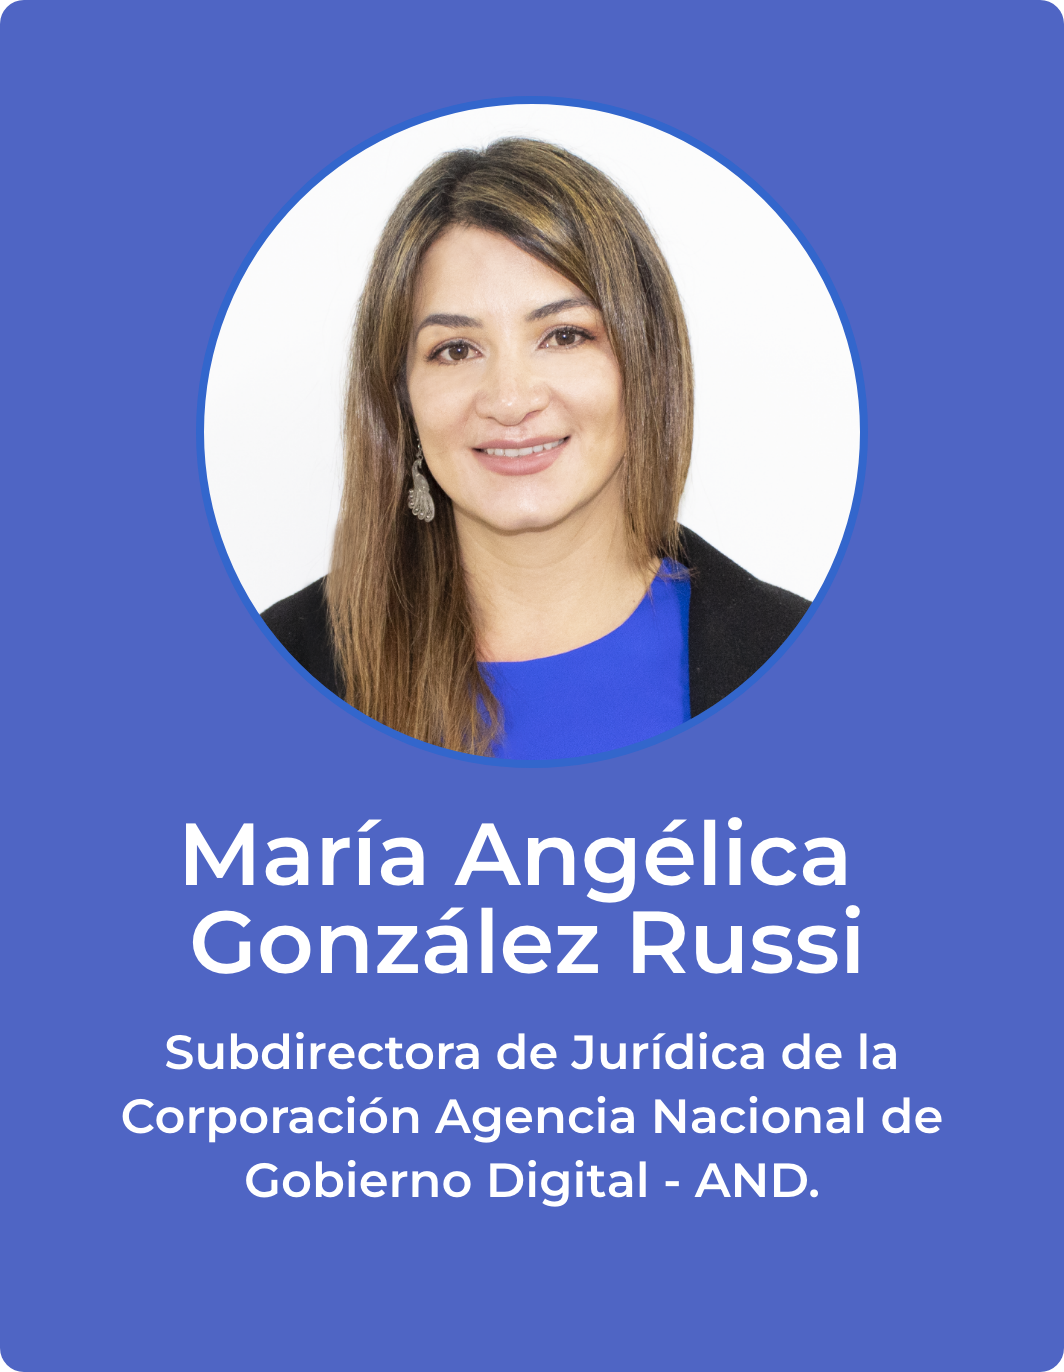 Foto de María Angélica González Rusii, Subdirectora de Jurídica de la Corporación Agencia Nacional de Gobierno Digital - AND.